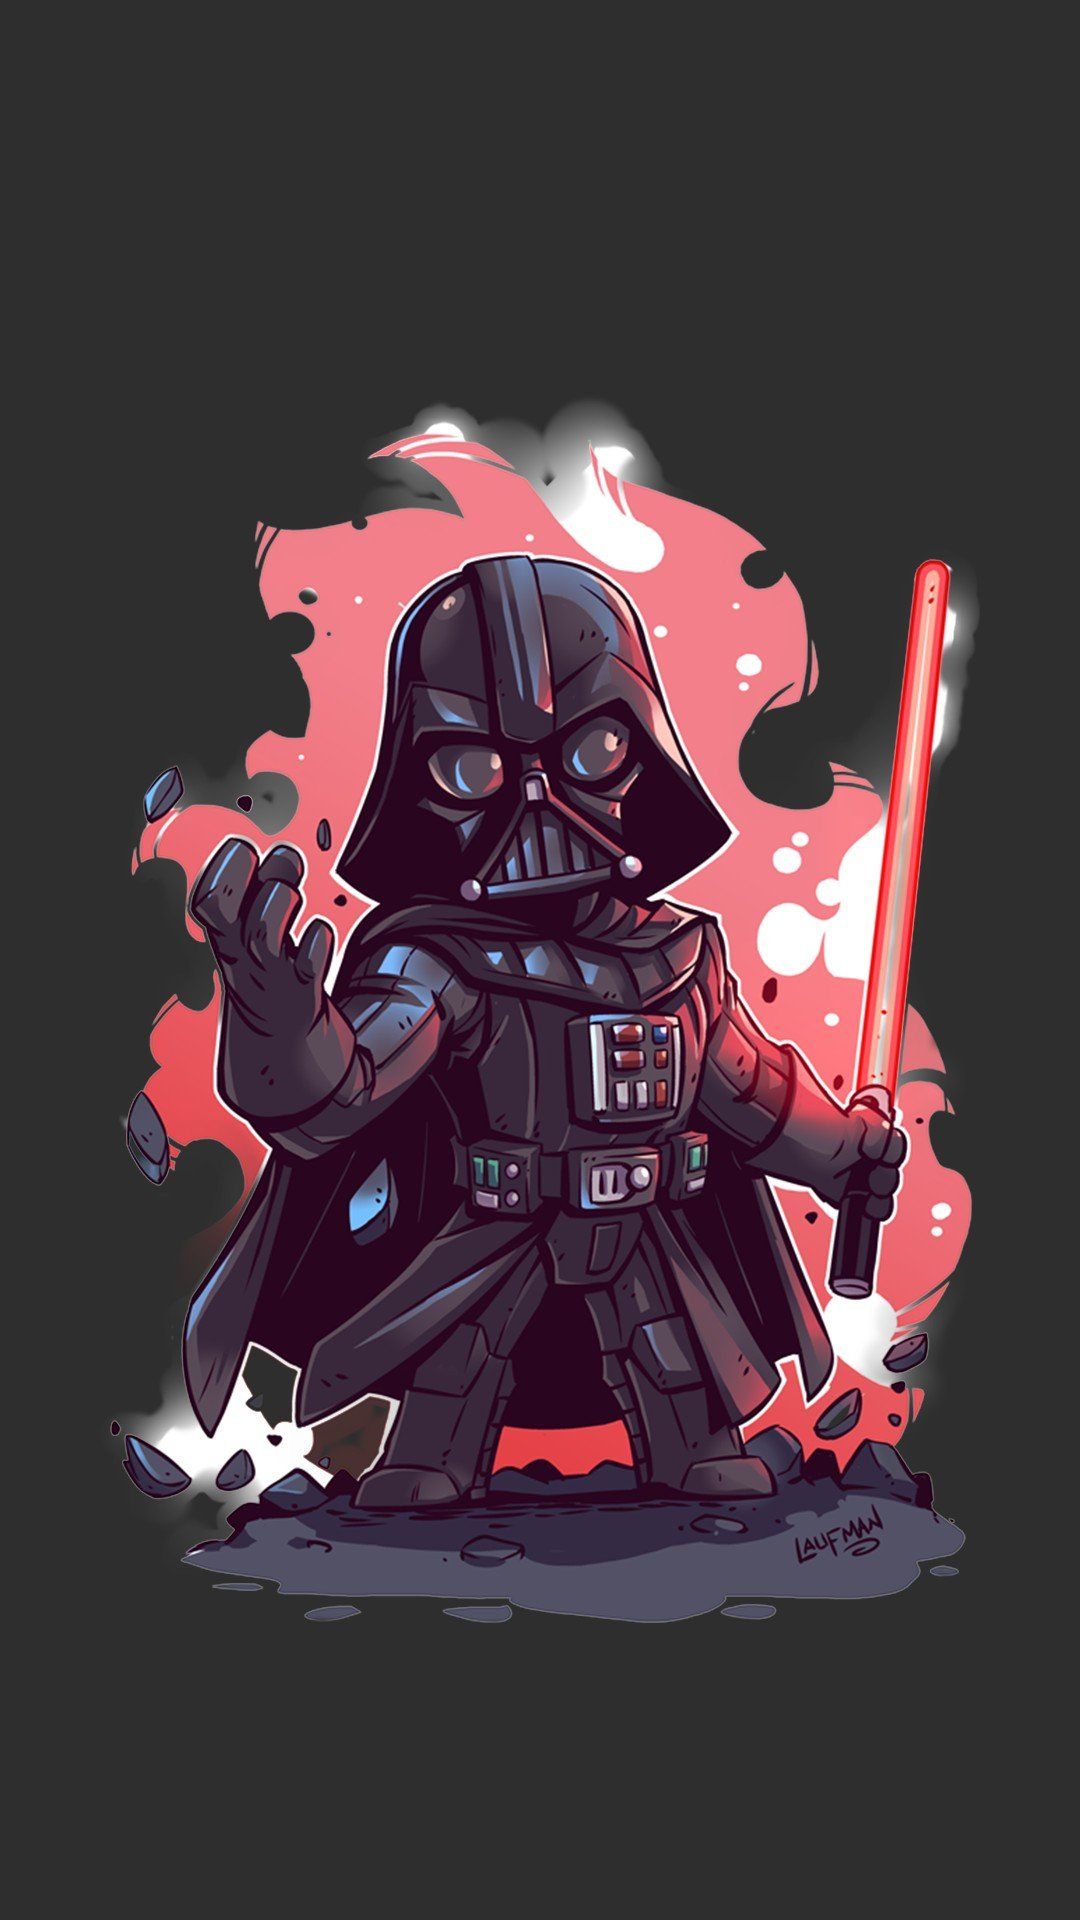 Darth Vader Cartoon Wallpaper Free Darth Vader Cartoon Background